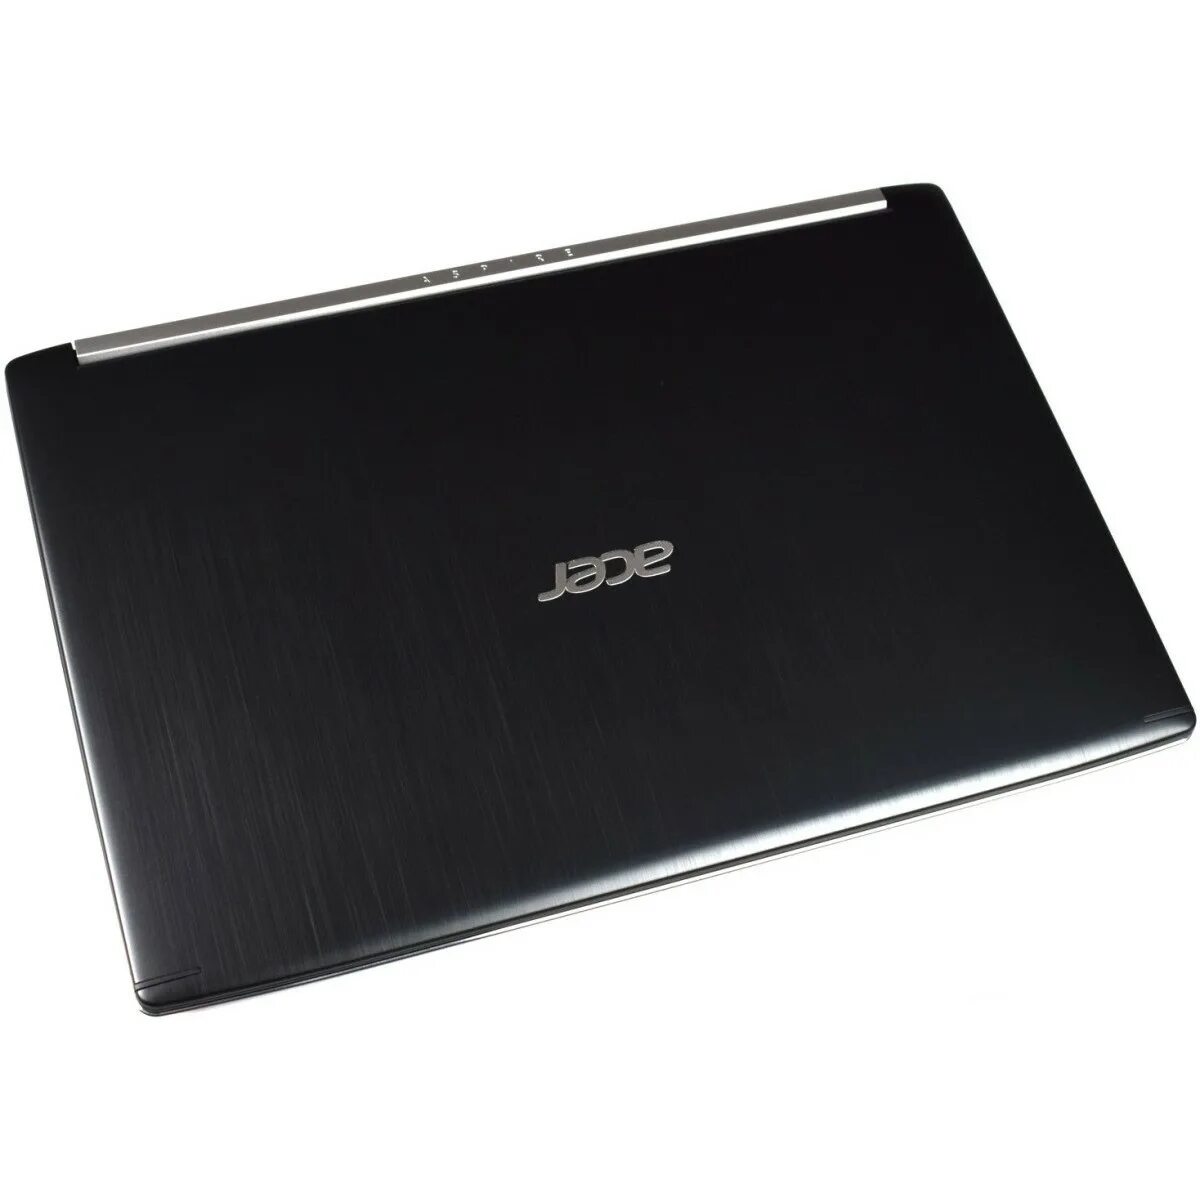 Acer Aspire a715-71g. Acer Aspire 7 a715-71g-71s3. A715-71g. A715-71g-53r6.